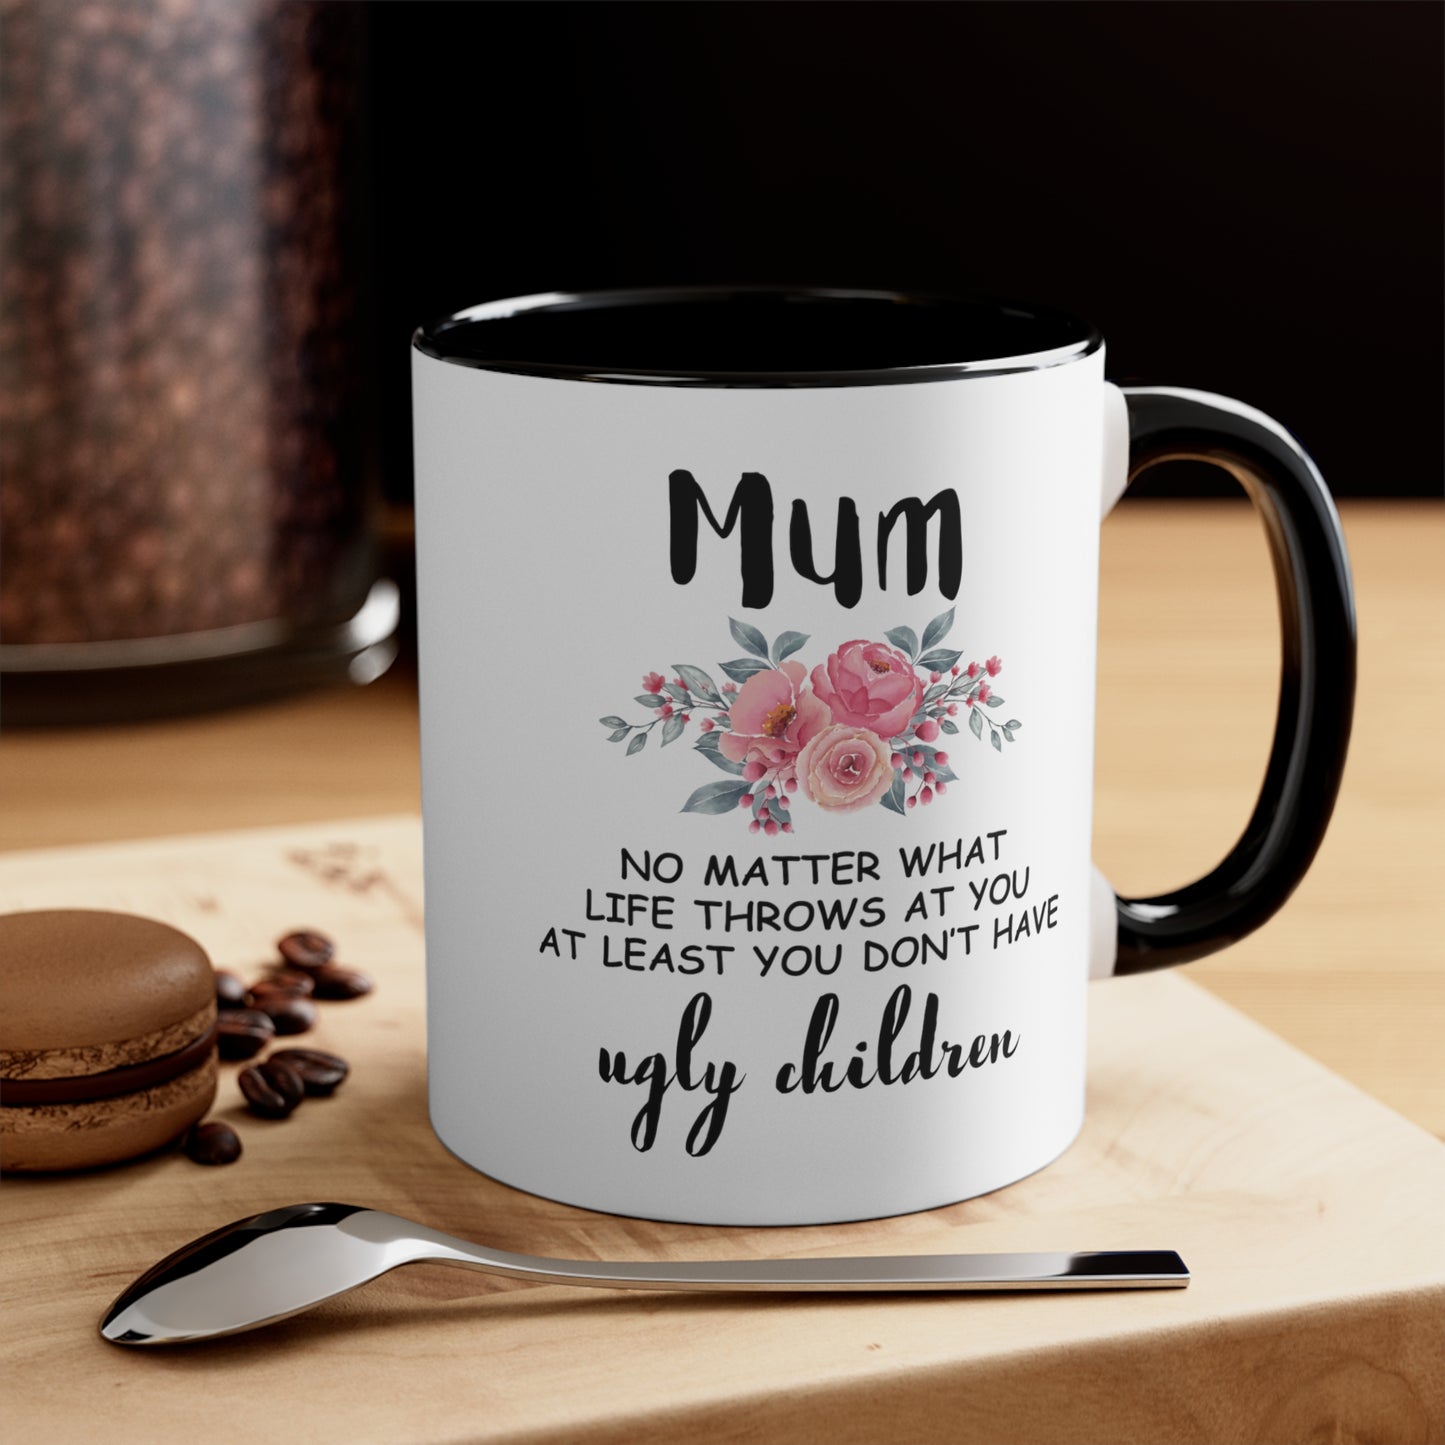 Mum Custom Mug from Ugly Children, Gift for Mom